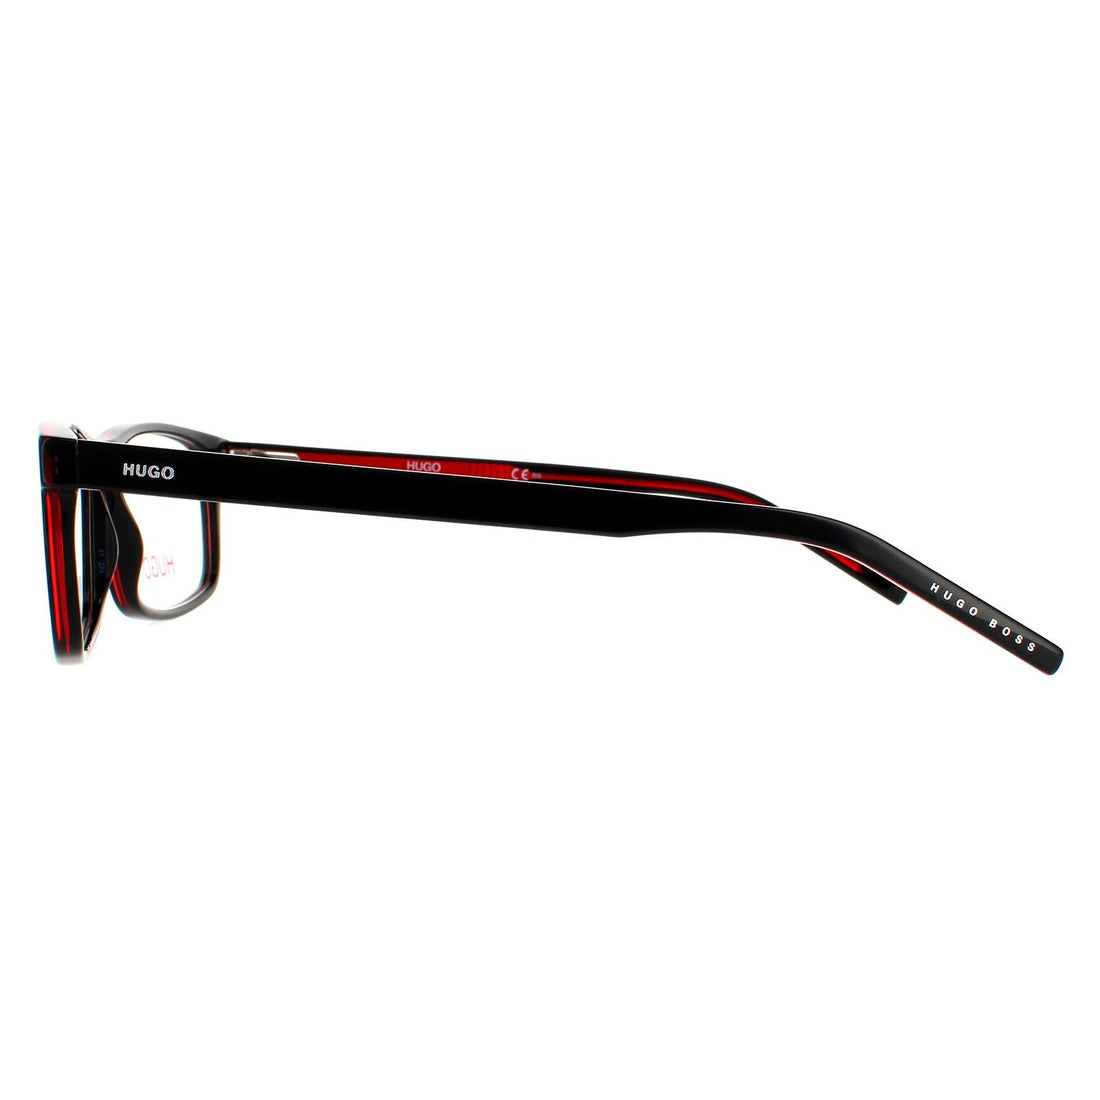 Hugo by Hugo Boss Glasses Frames HG 1004 OIT 16 Black Red Men